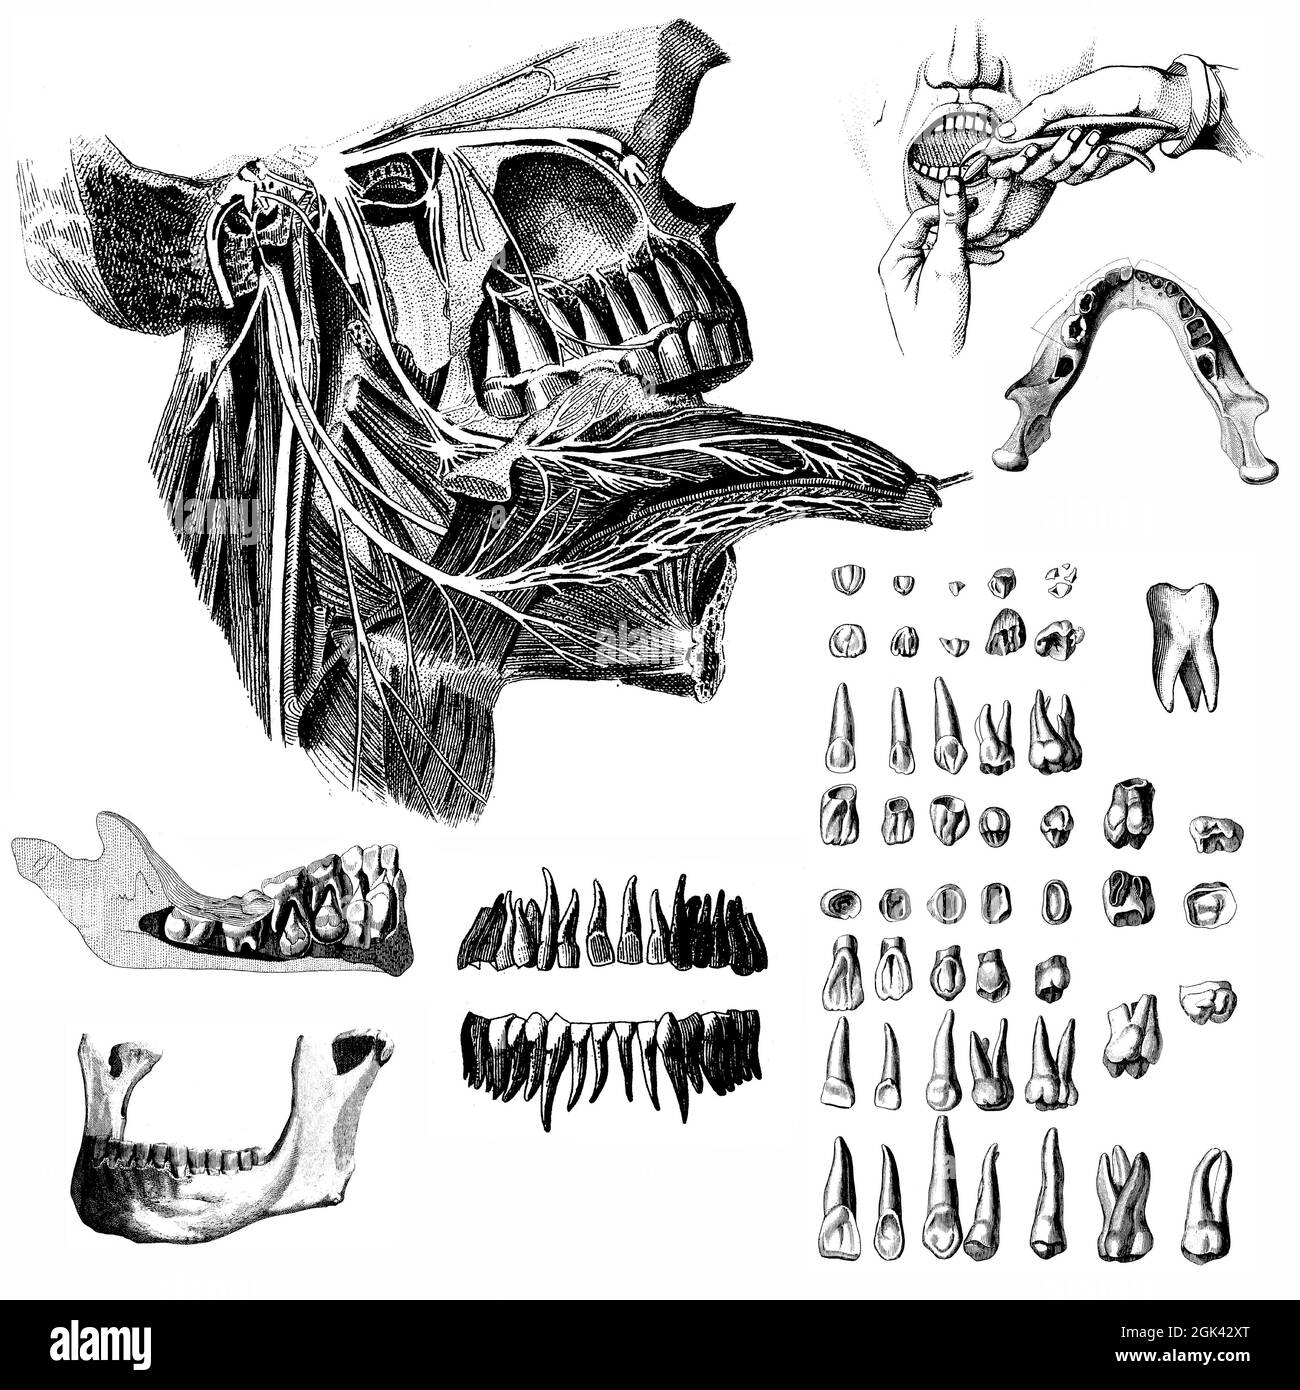 Medical - Ilustraciones anatómicas victorianas - sobre un fondo blanco para corte. Foto de stock